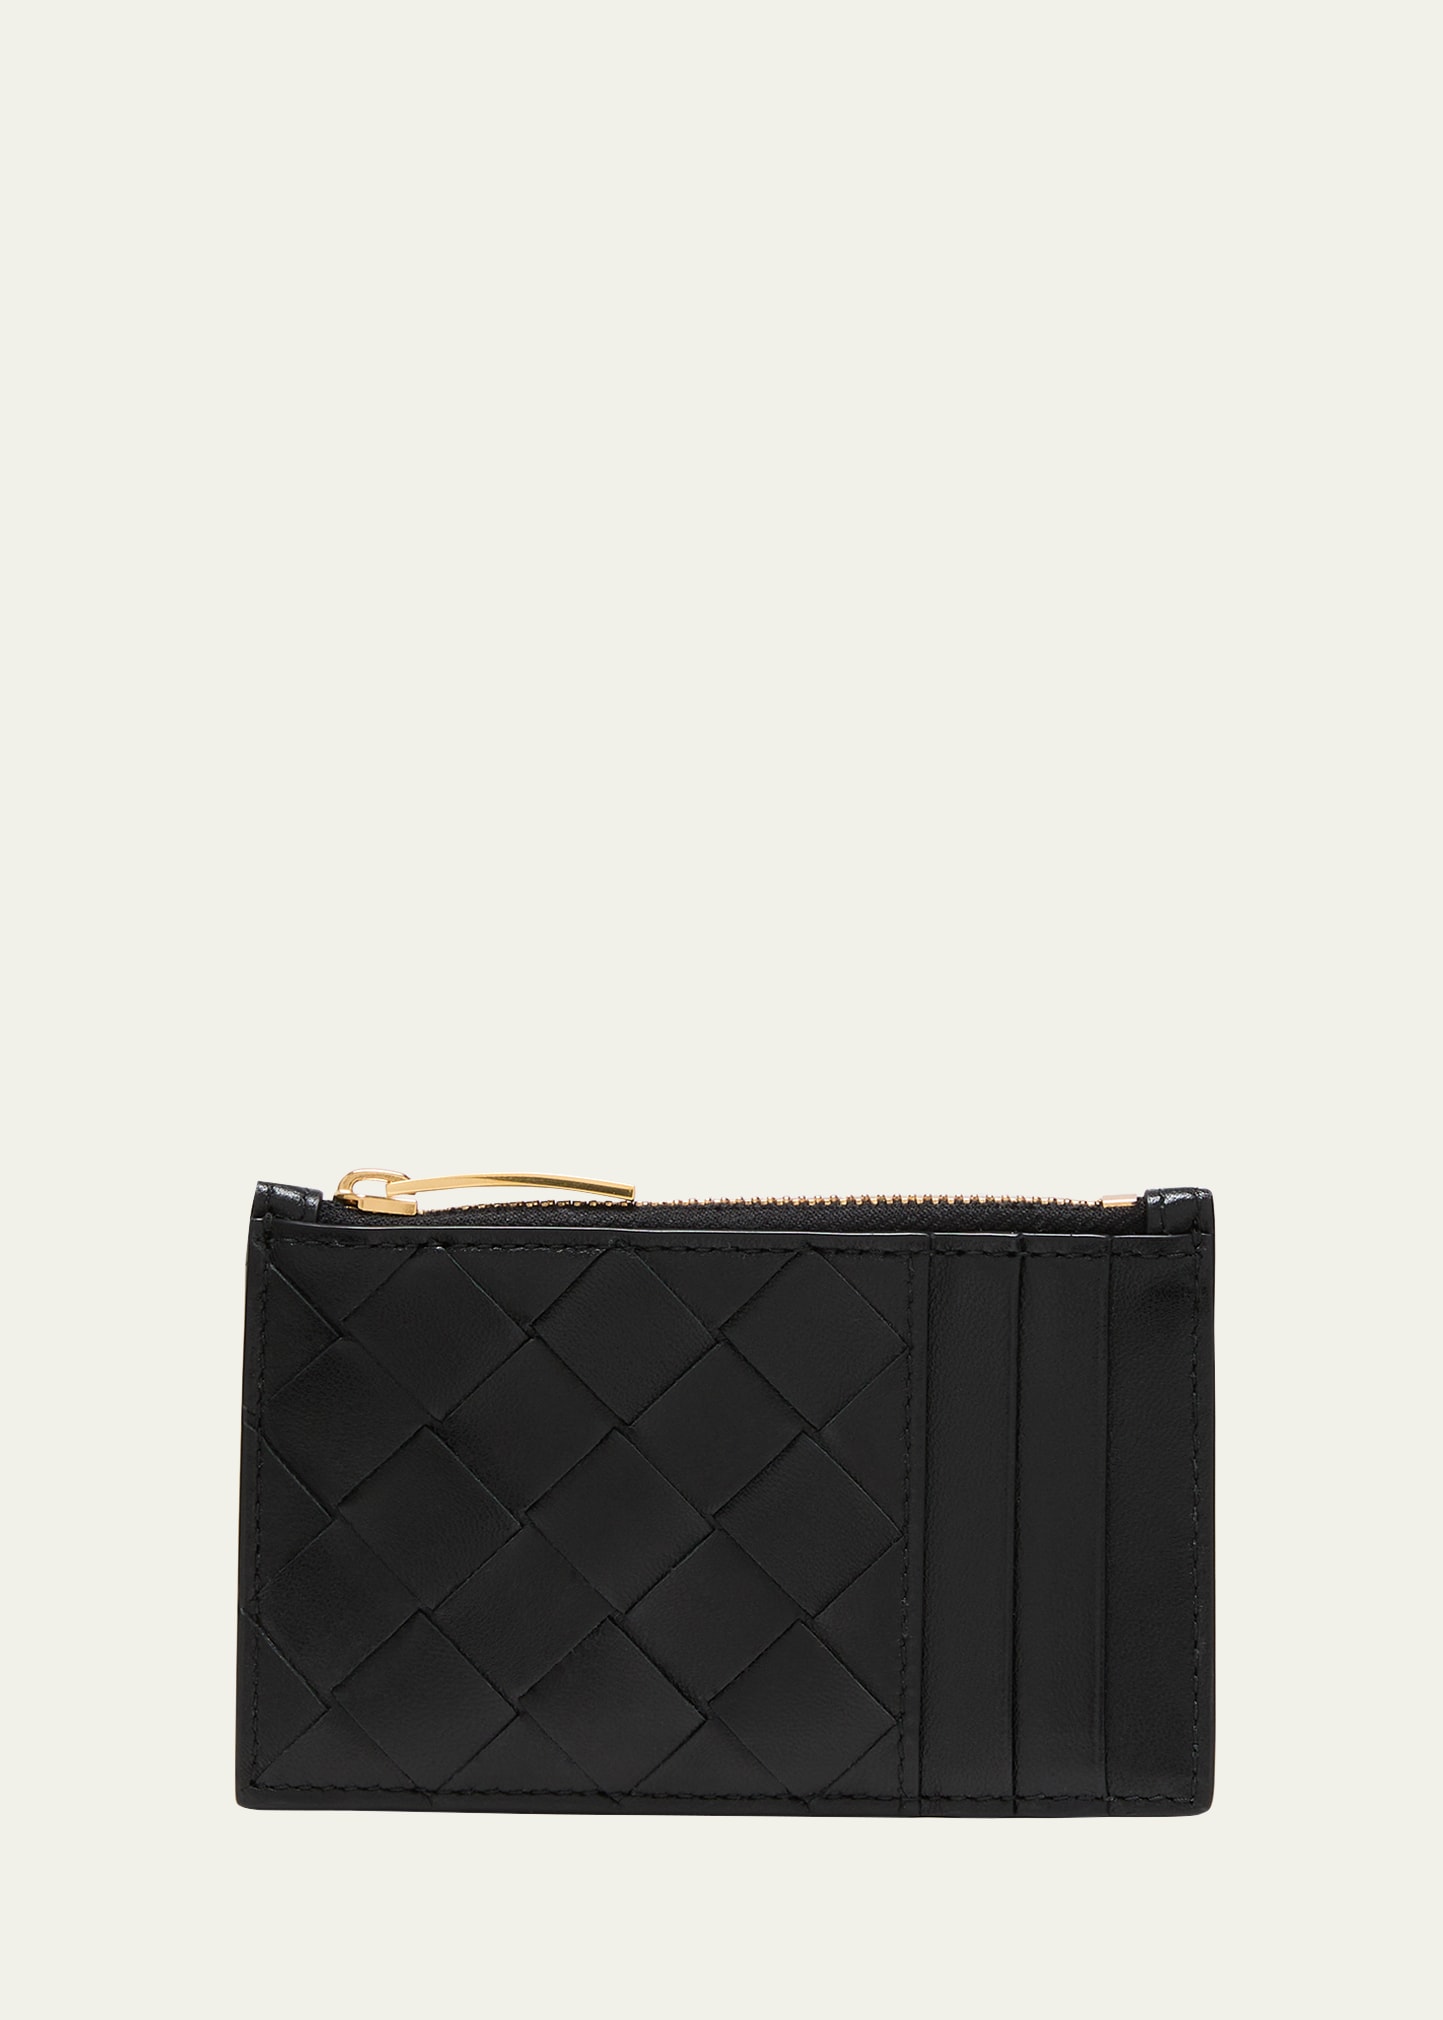 Bottega Veneta Intrecciato Leather Zip Pocket Cardholder In 8425 Black